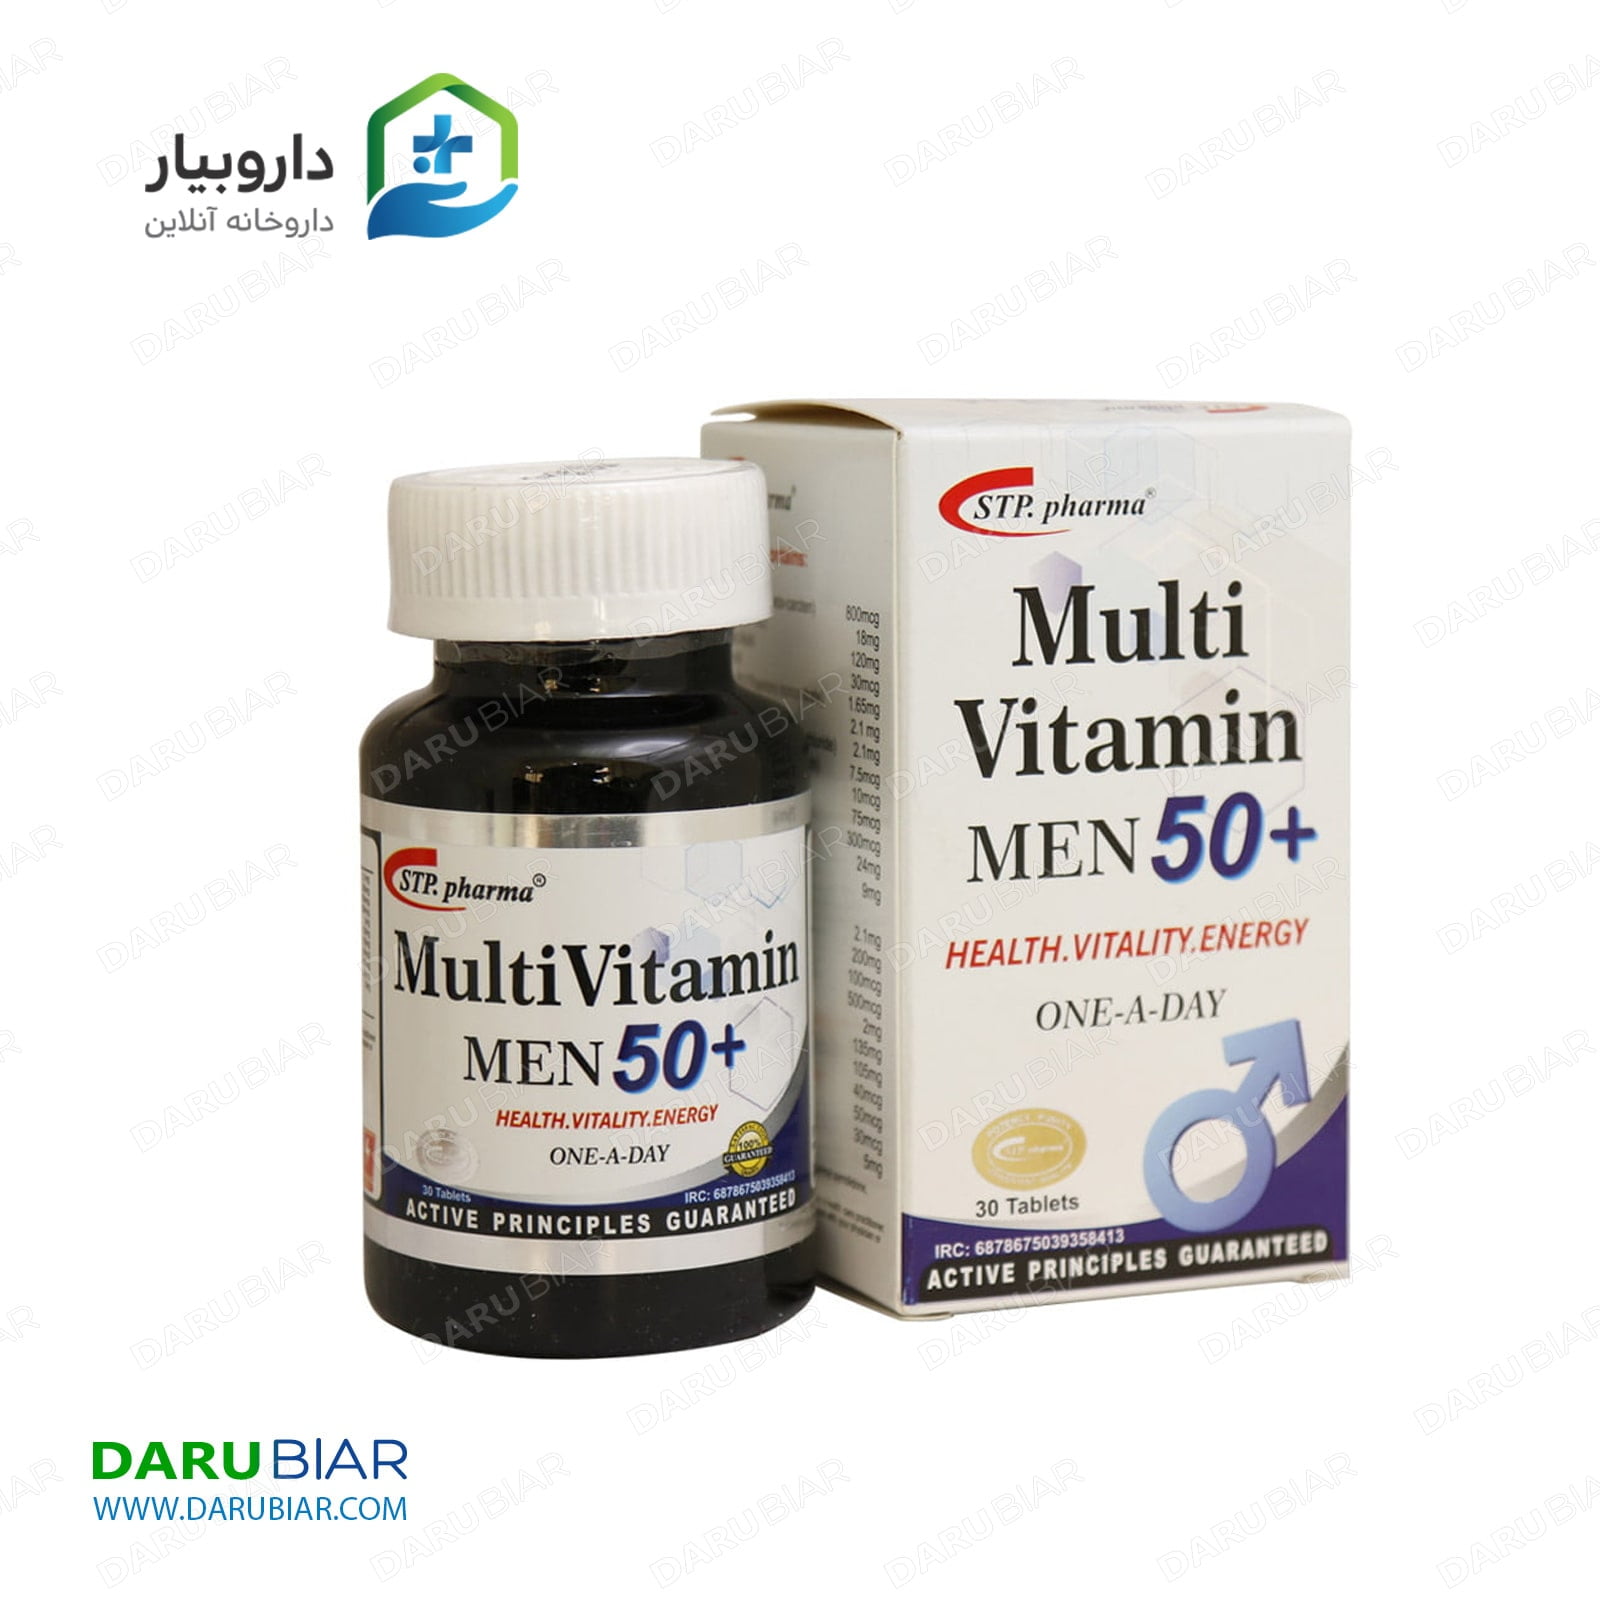 مولتی ویتامین مردان بالای 50 سال اس تی پی فارما 30 عددی STP.pharma MultiVitamin Men 50+ 30 Tablets